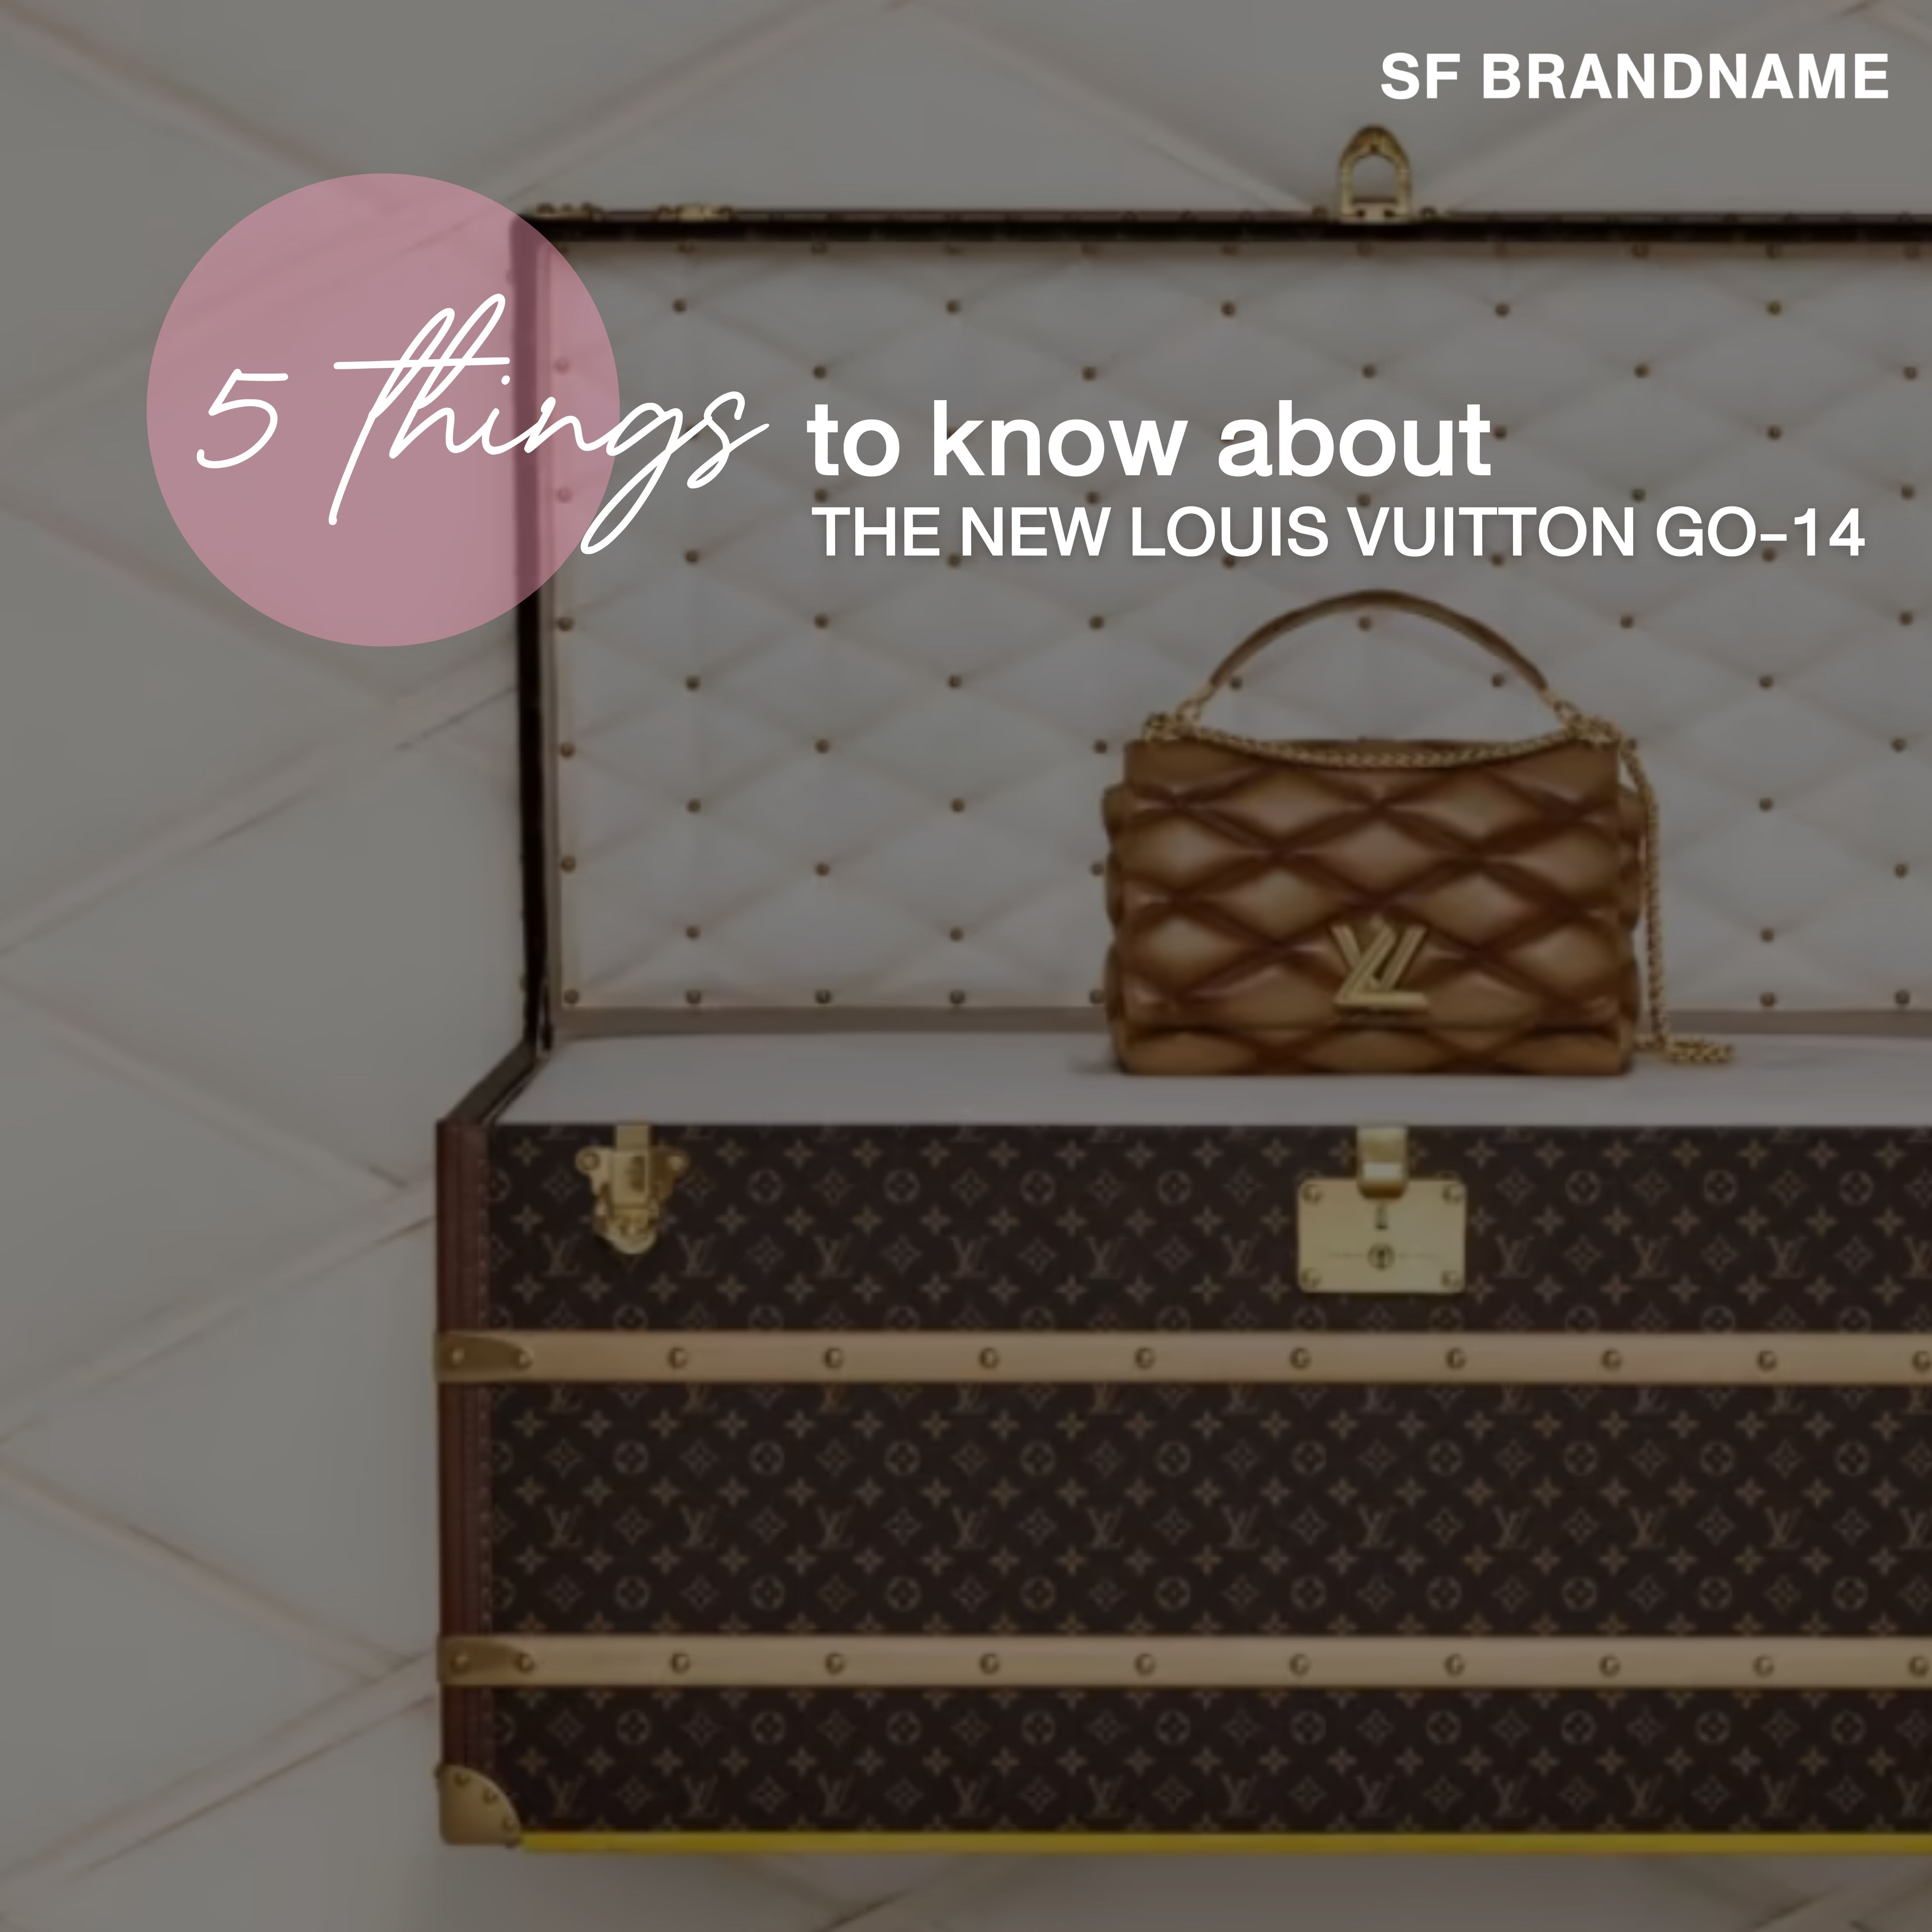 5 เรื่องน่ารู้เกี่ยวกับกระเป๋า Louis Vuitton GO-14 ใบใหม่